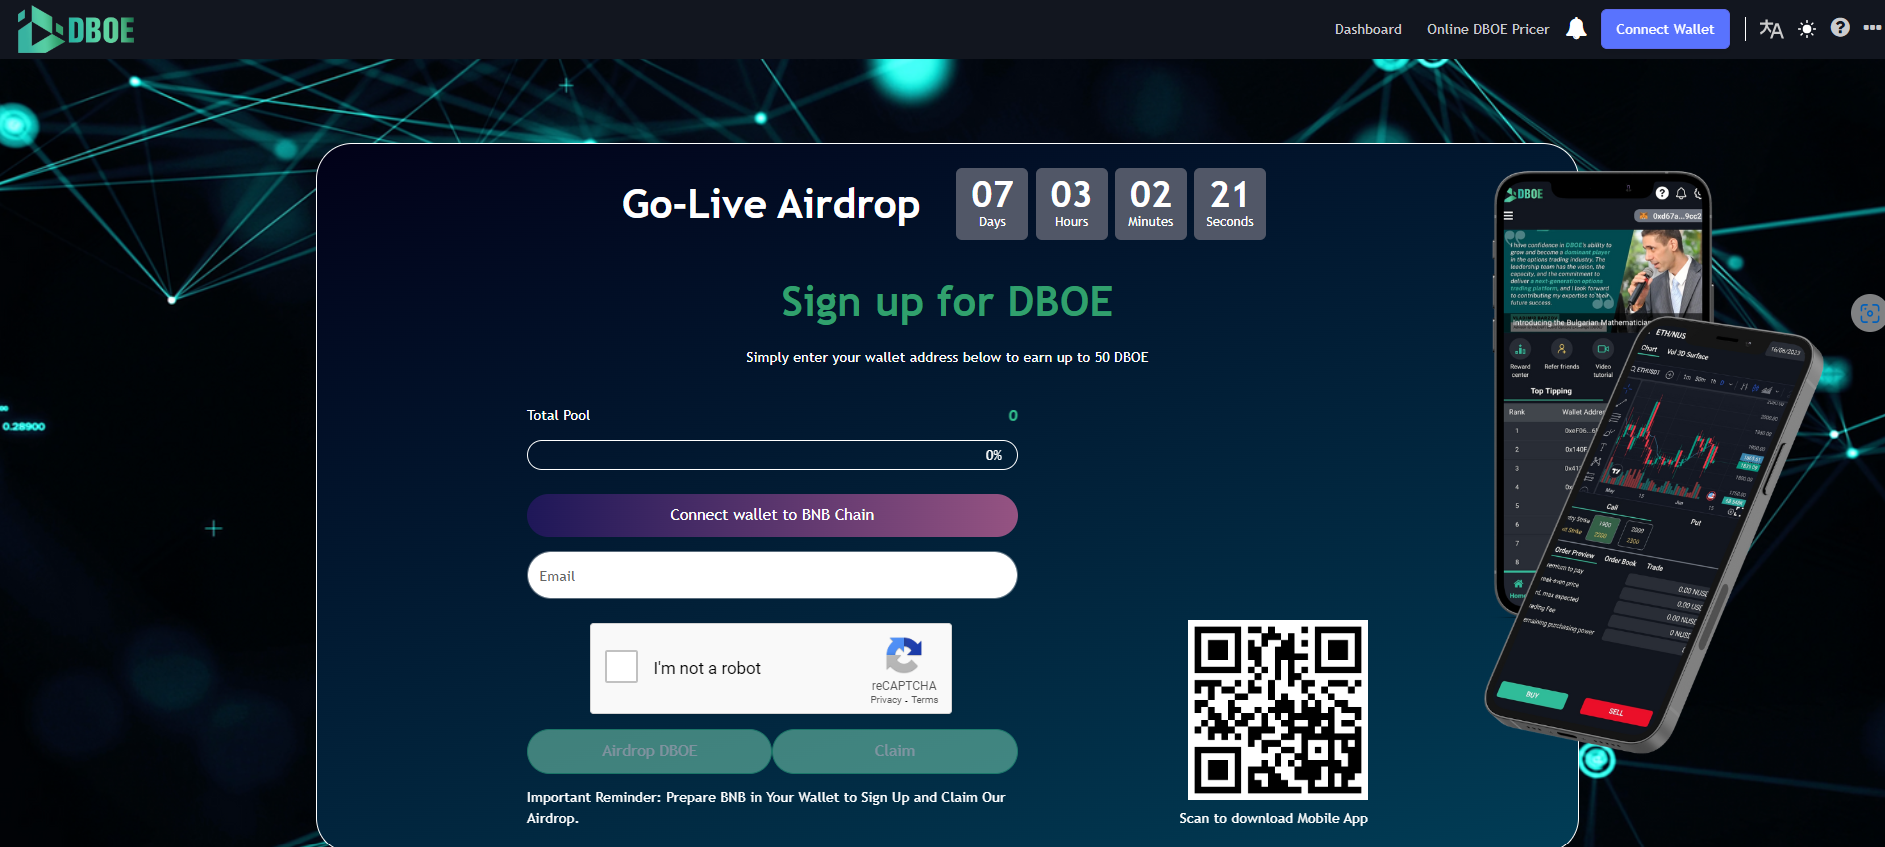 Hướng dẫn đăng ký nhận token DBOE tại sự kiện Go-live Airdrop 